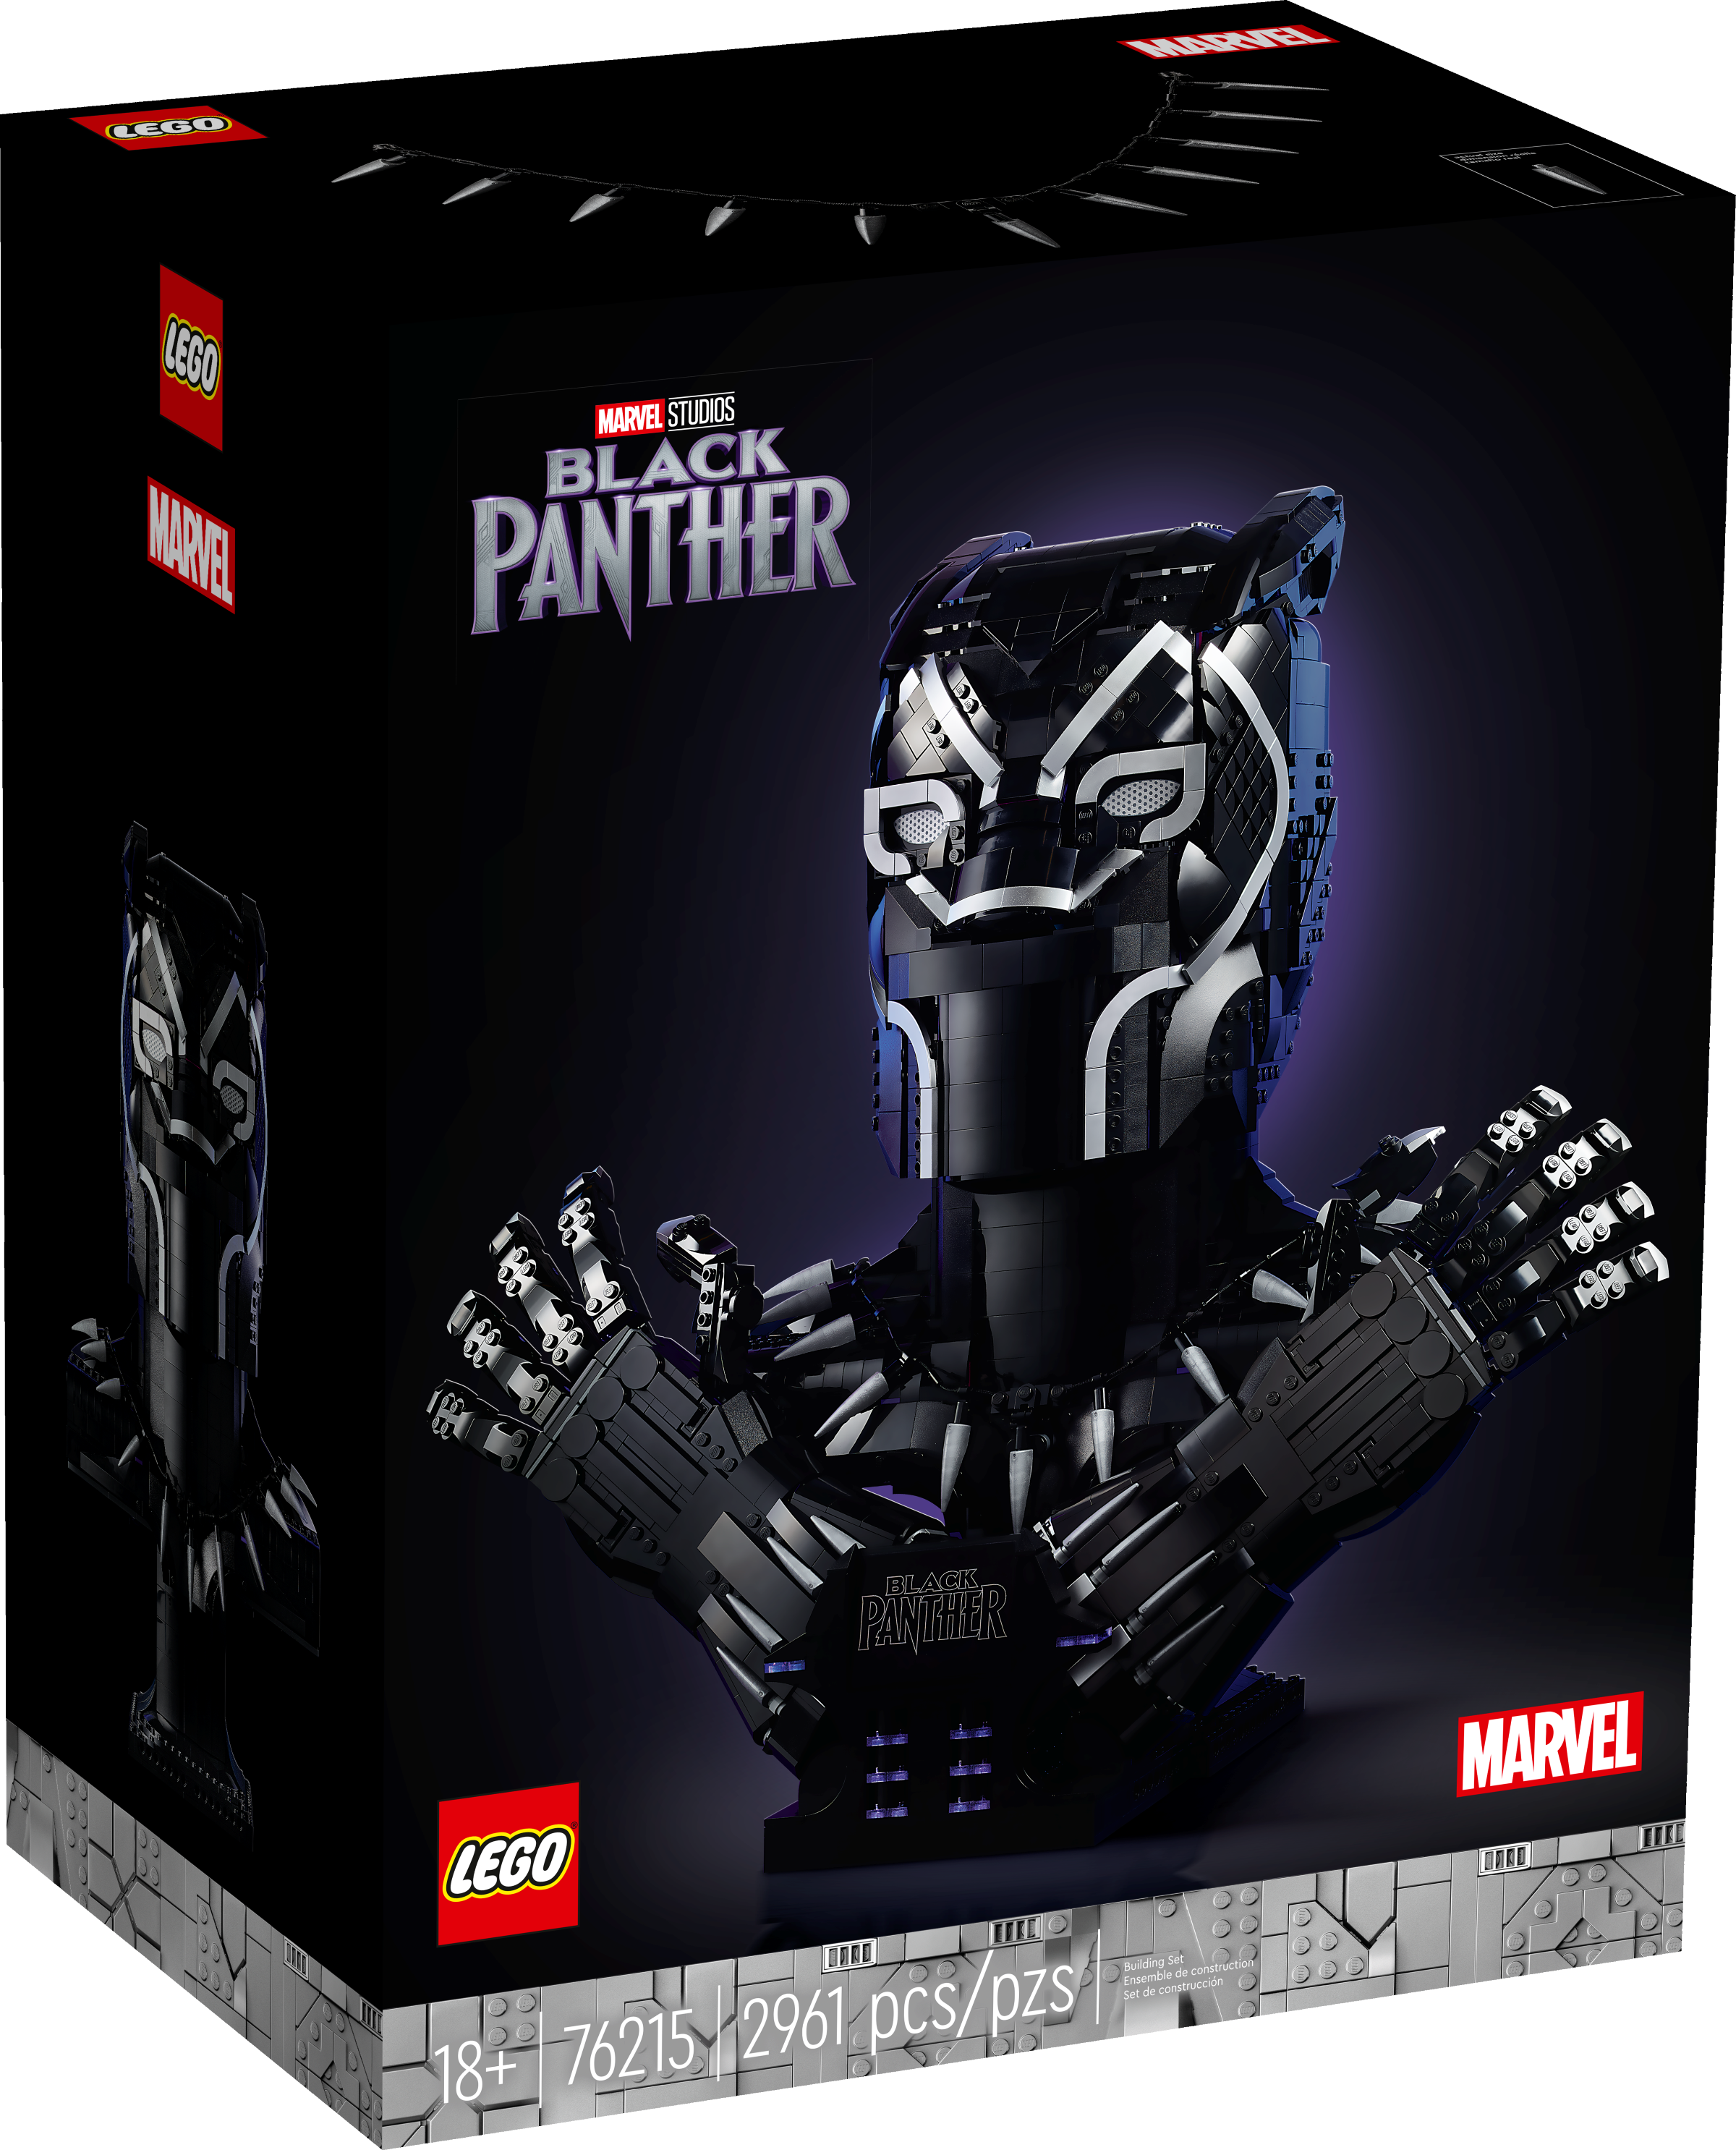 Black Panther 76215, Marvel